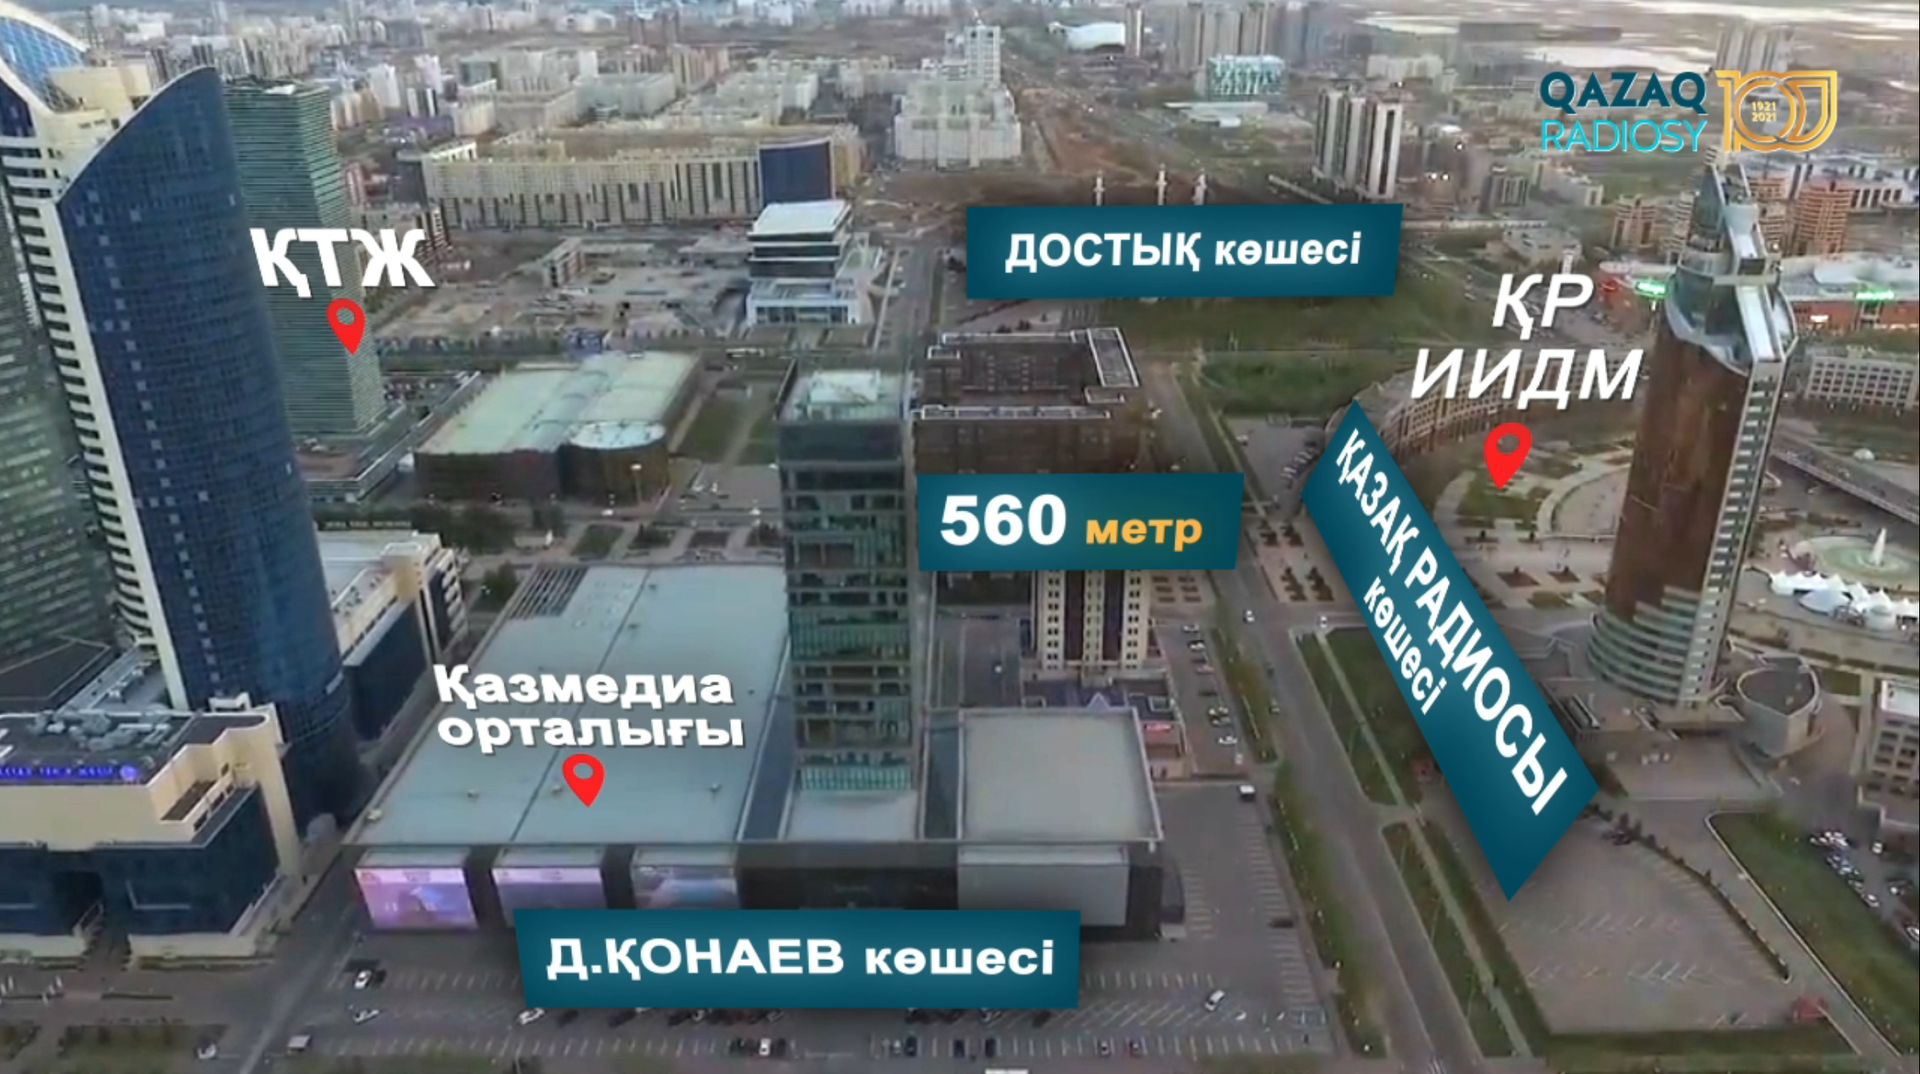 Улицу в центре левого берега в Нур-Султане переименуют в честь Казахского радио - Sputnik Казахстан, 1920, 01.04.2021